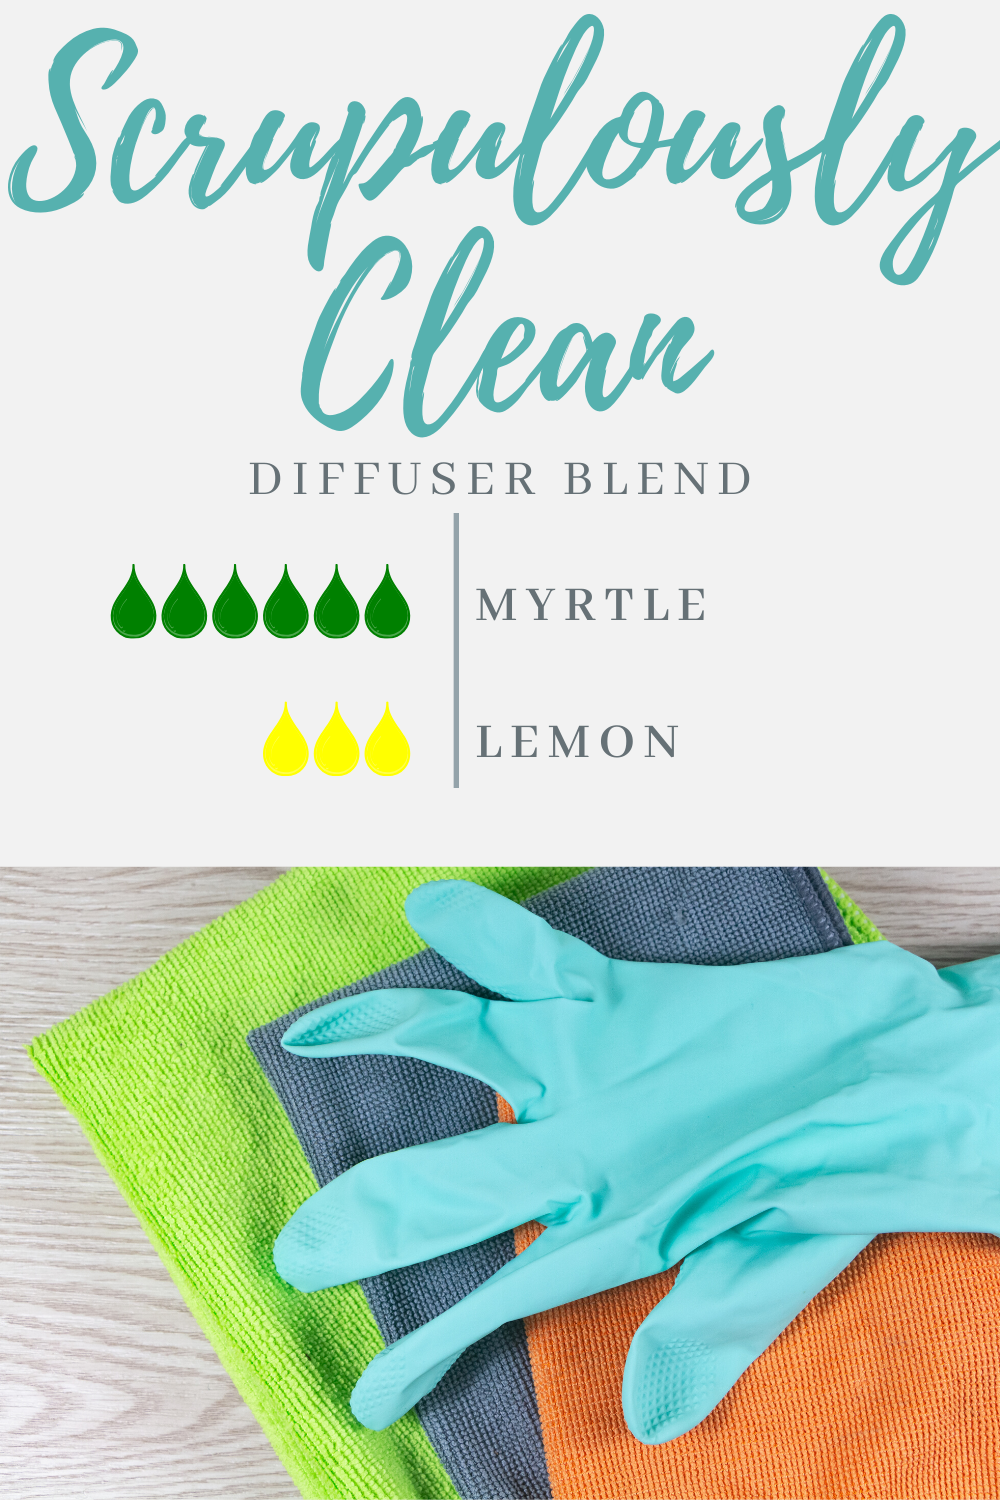 Scrupulously Clean Lemon & Myrtle Diffuser Blend